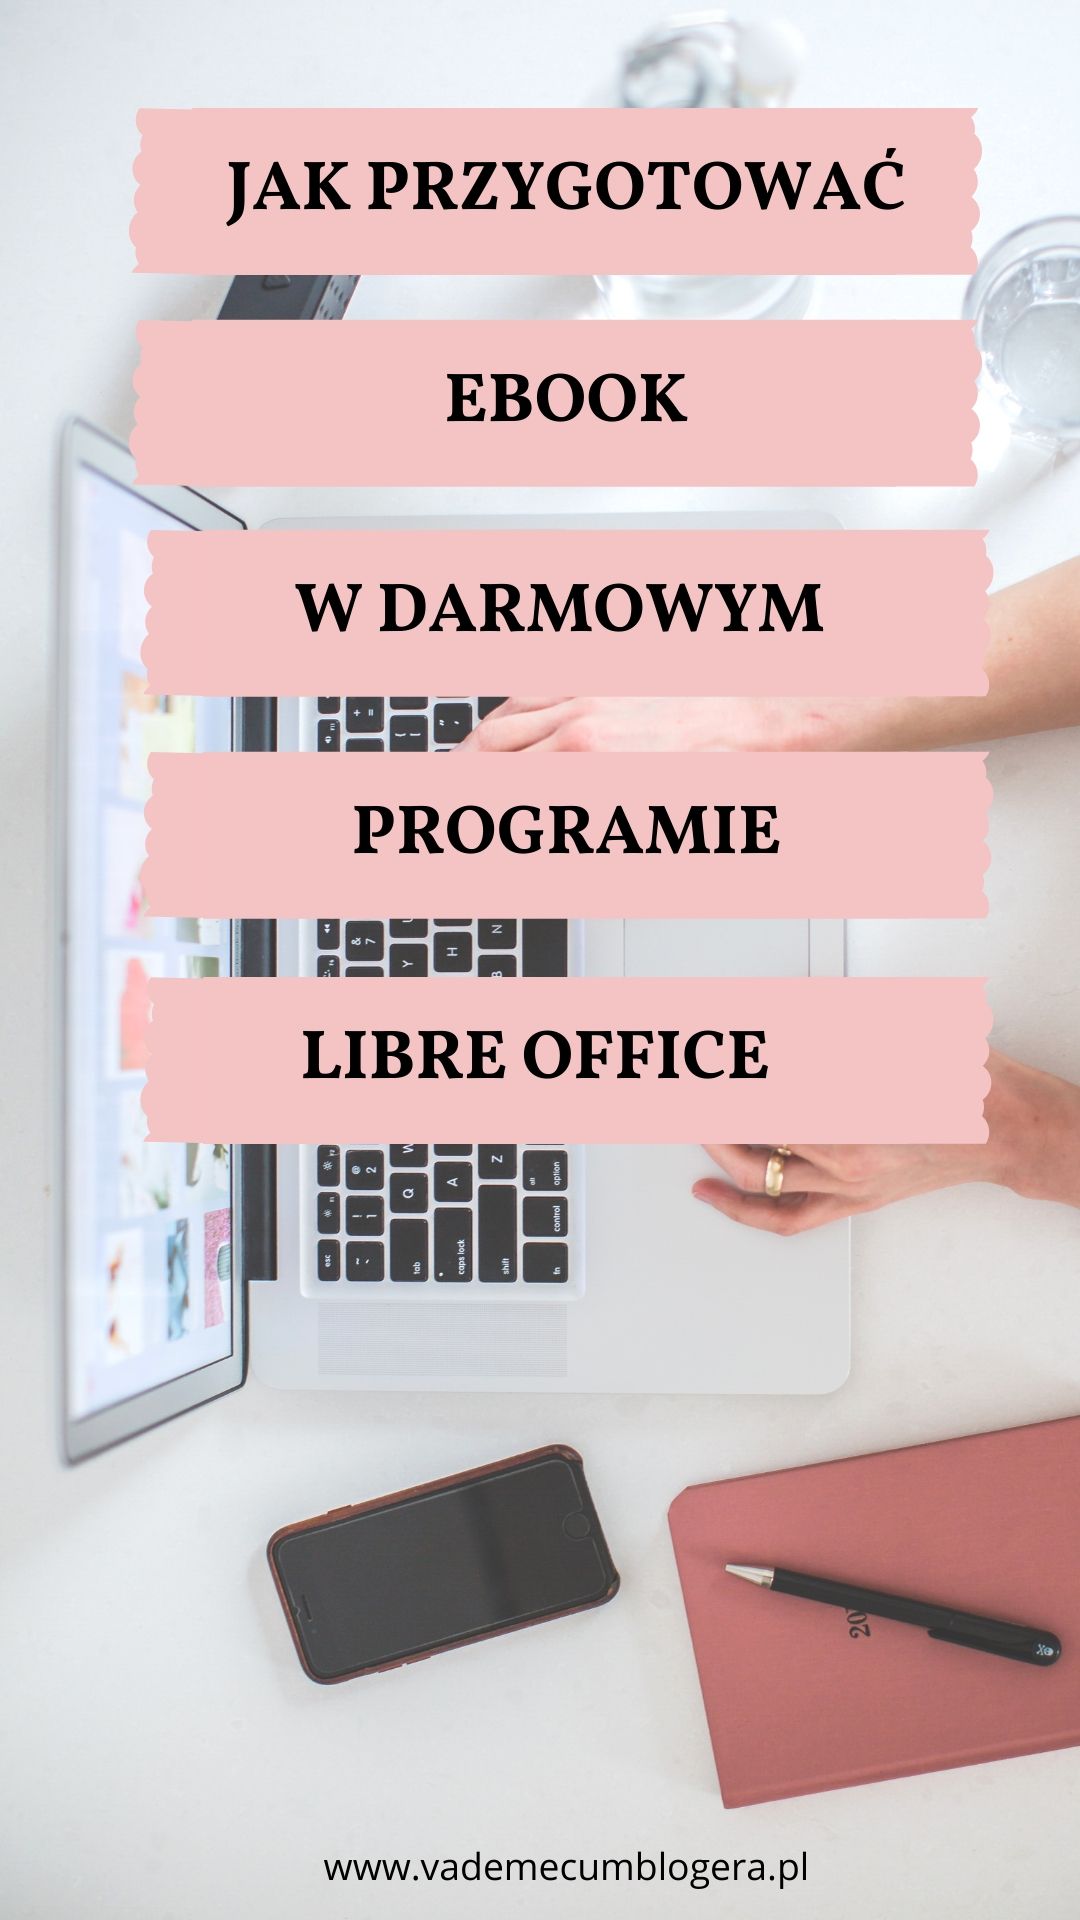 Jak przygotować ebook w darmowym programie Libre Office?